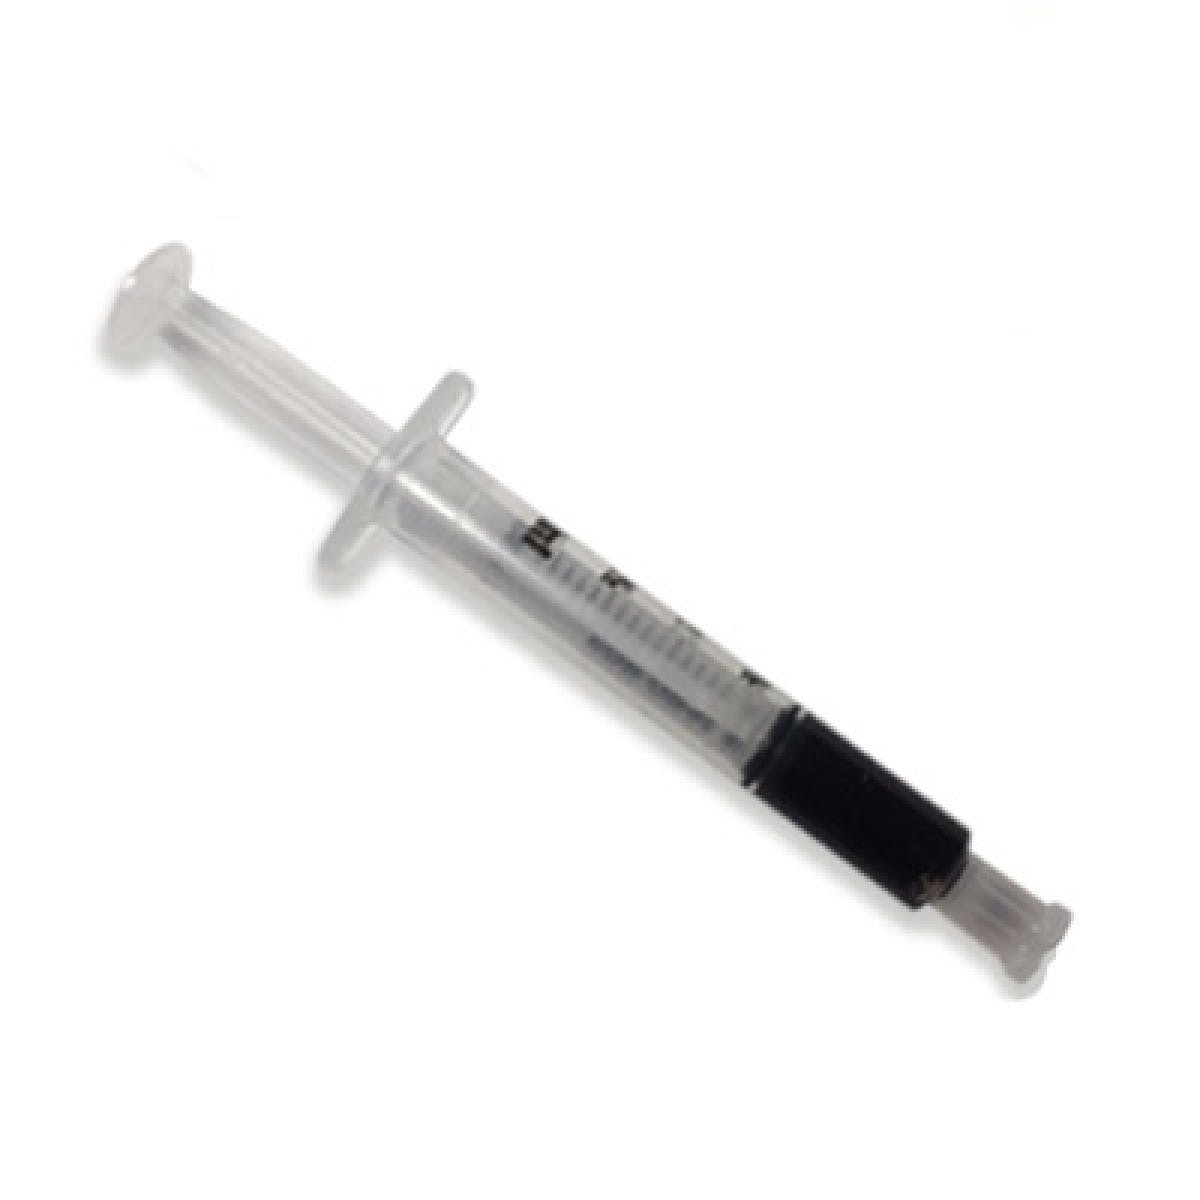 Syringe - Cannatonic